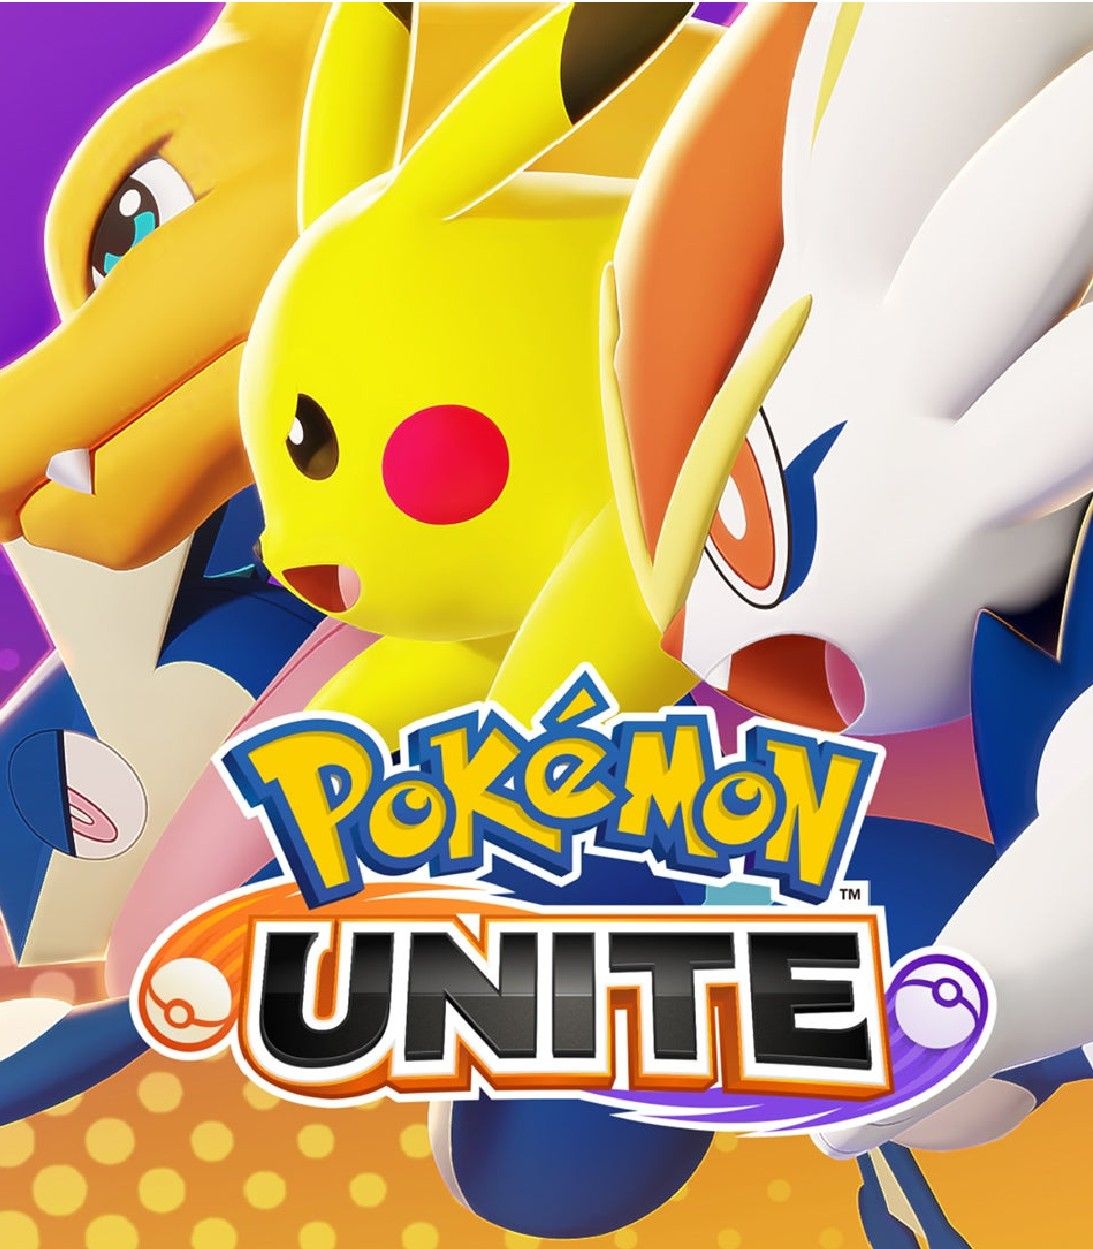 Pikachu and other Pokemon prepare for battle in Pokemon Unite.